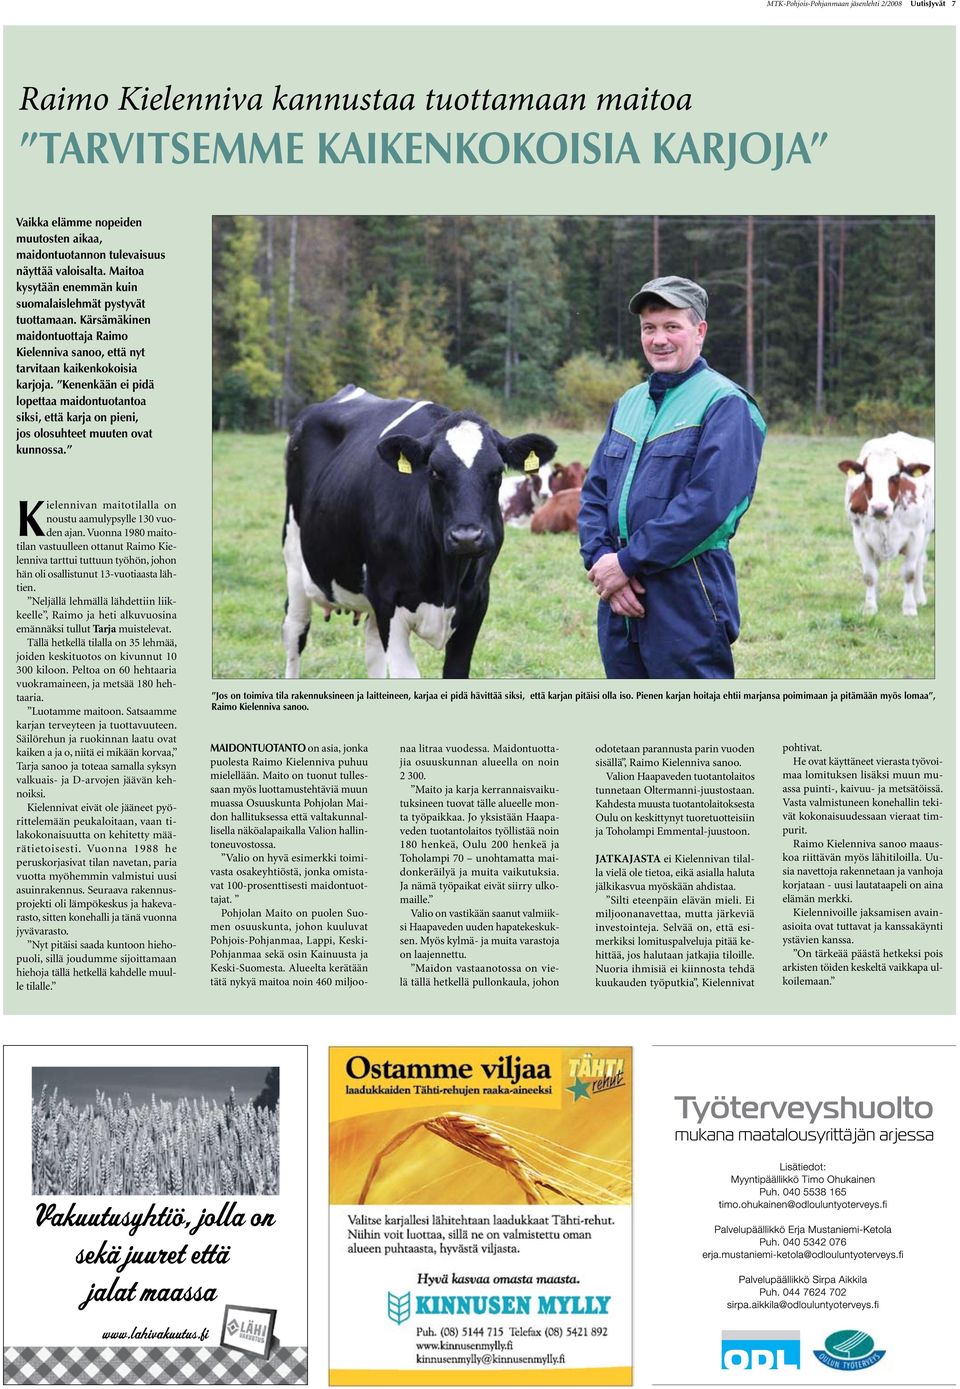 Kärsämäkinen maidontuottaja Raimo Kielenniva sanoo, että nyt tarvitaan kaikenkokoisia karjoja.